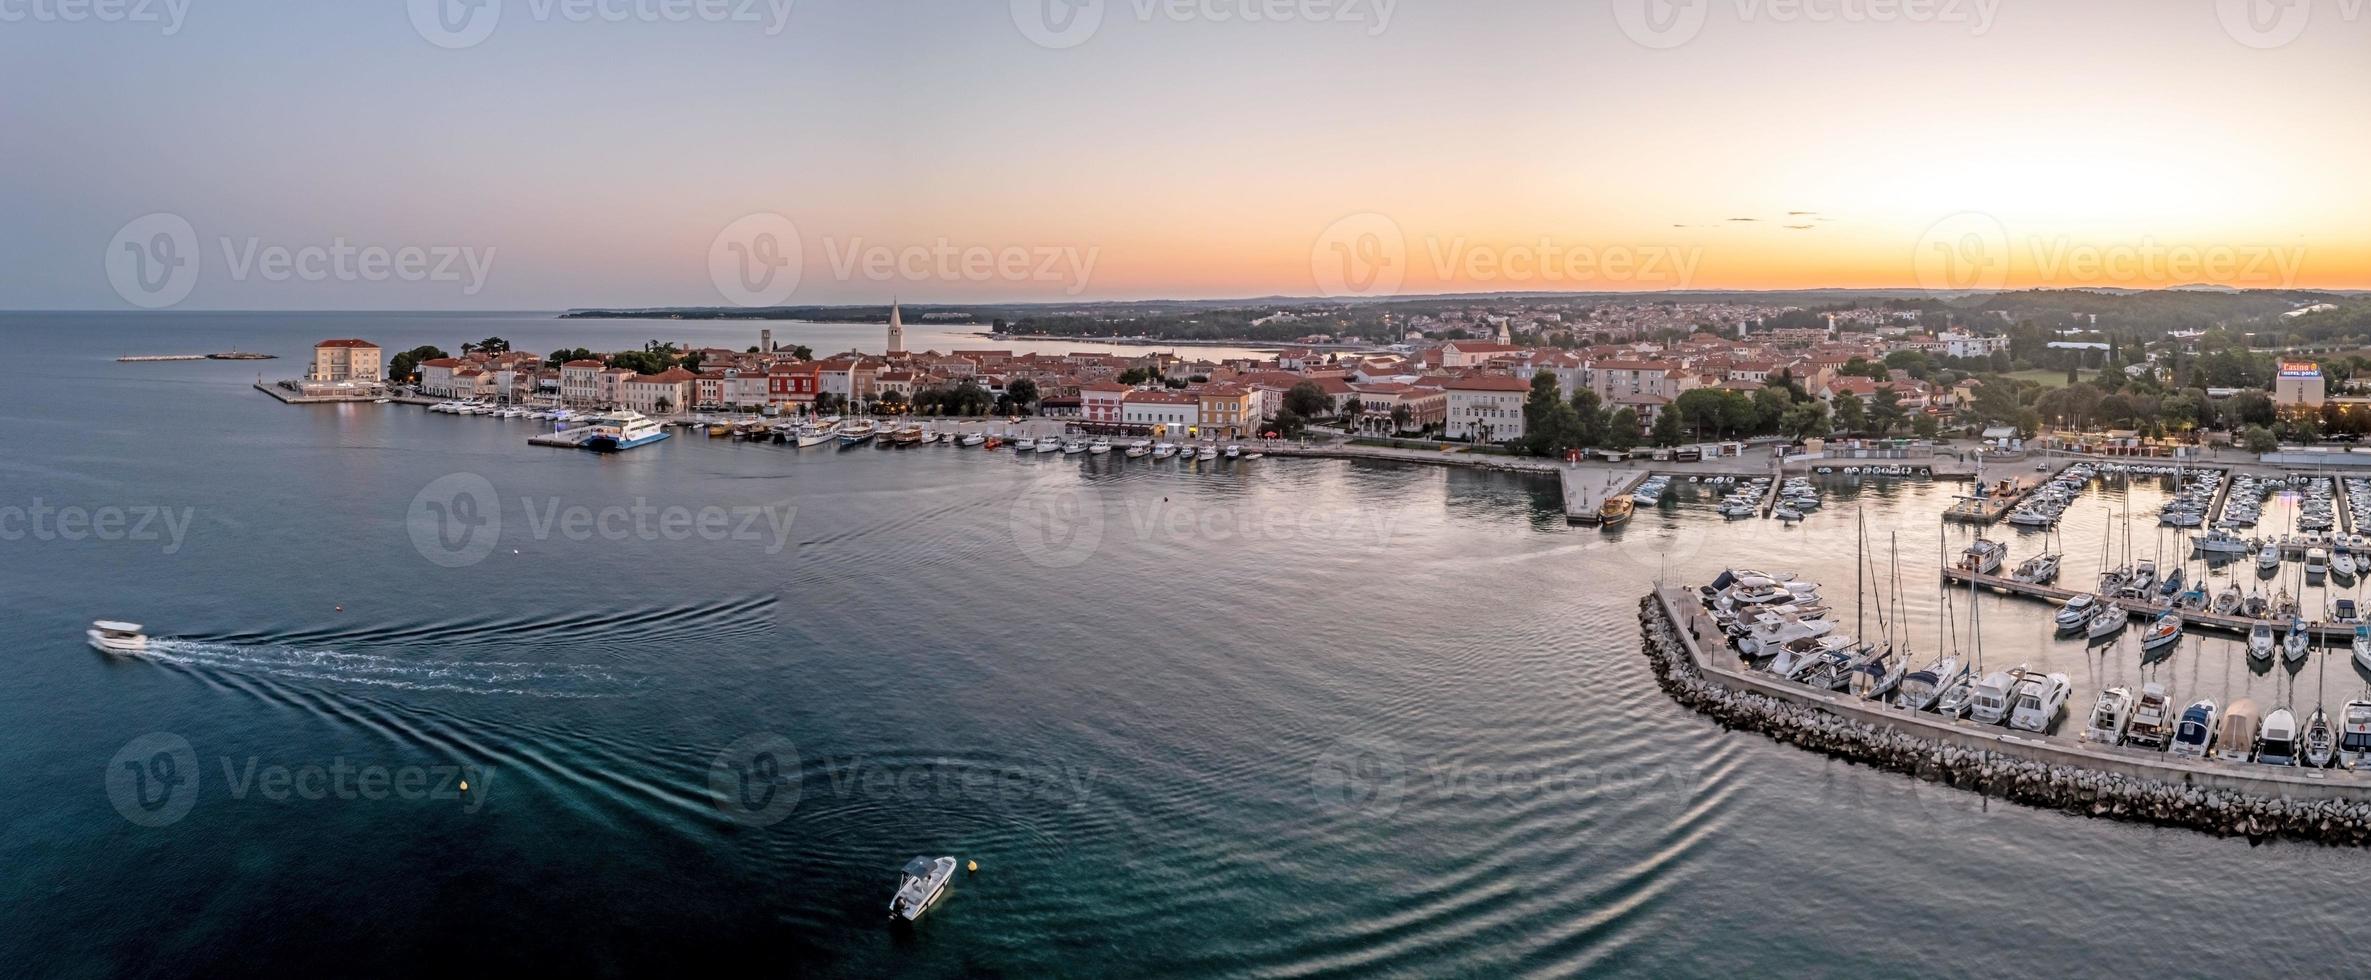 panorama de drones de la ciudad costera croata de porec con puerto y paseo marítimo durante el amanecer foto